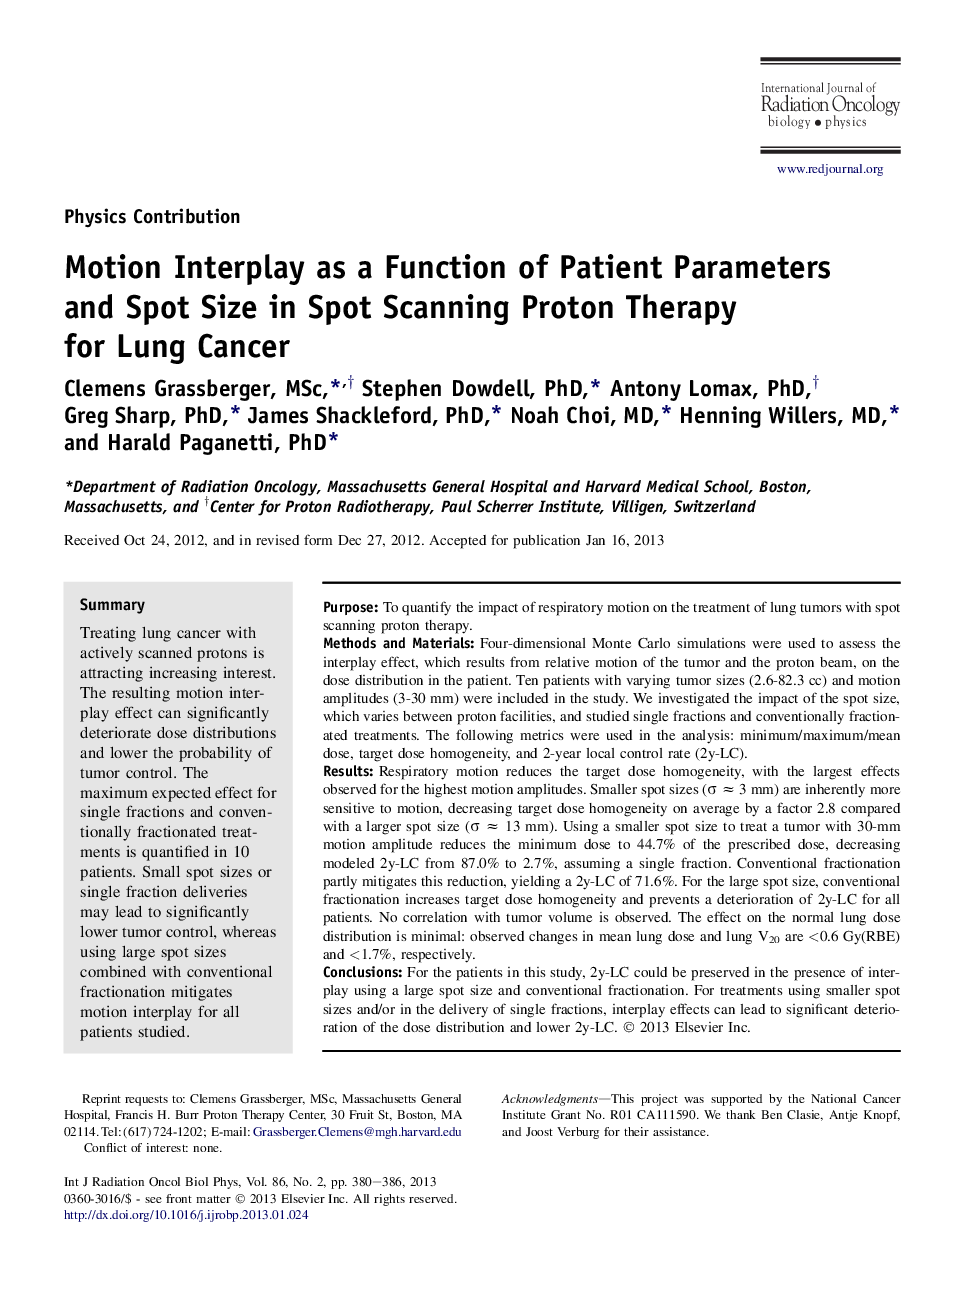 تعامل حرکتی به عنوان تابع پارامترهای بیمار و اندازه نقطه در تکنیک اسکن پروتئین برای سرطان ریه 